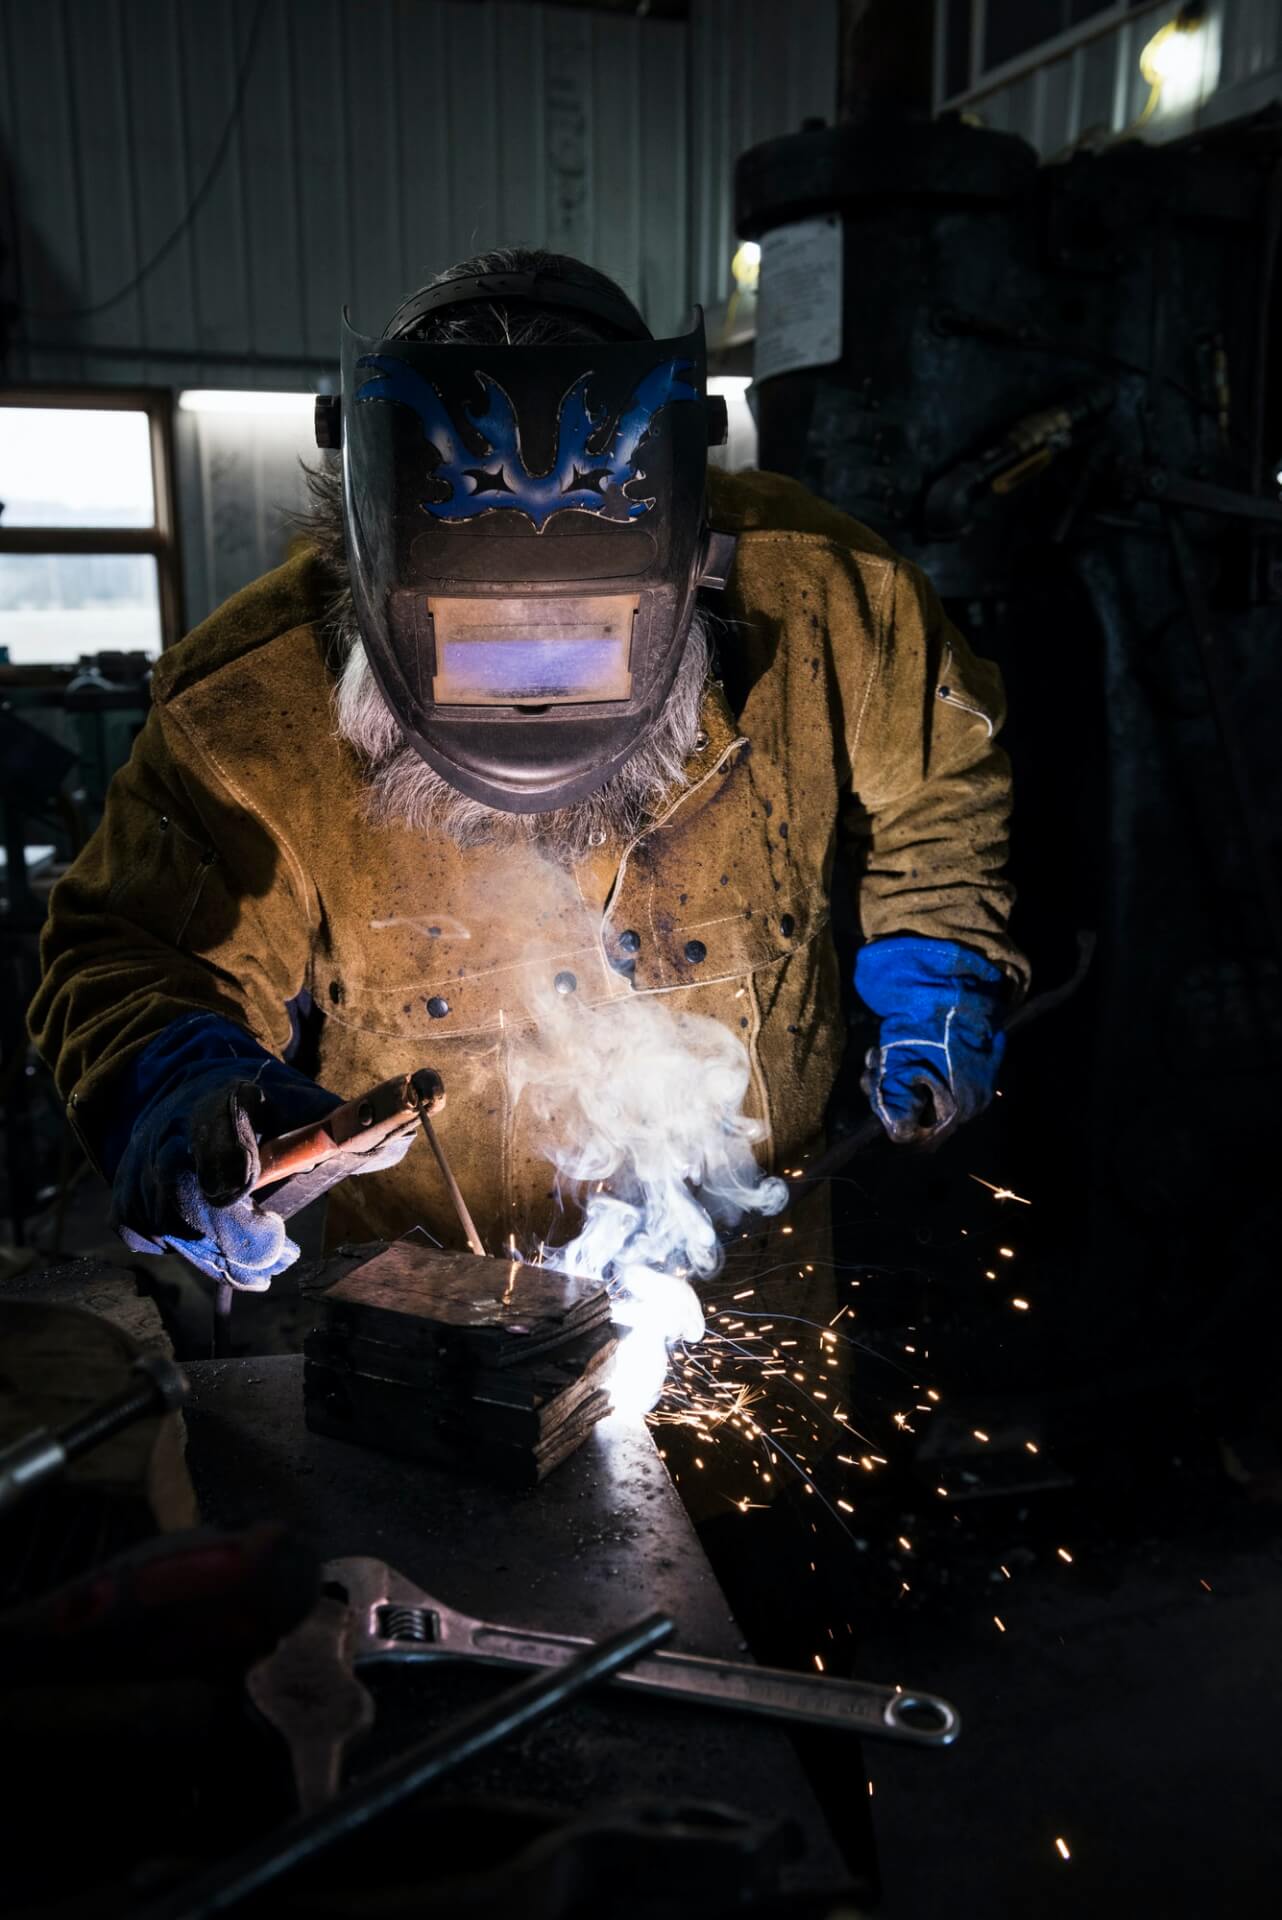 blacksmith-in-welding-mask-welding-metal-in-workshop.jpg